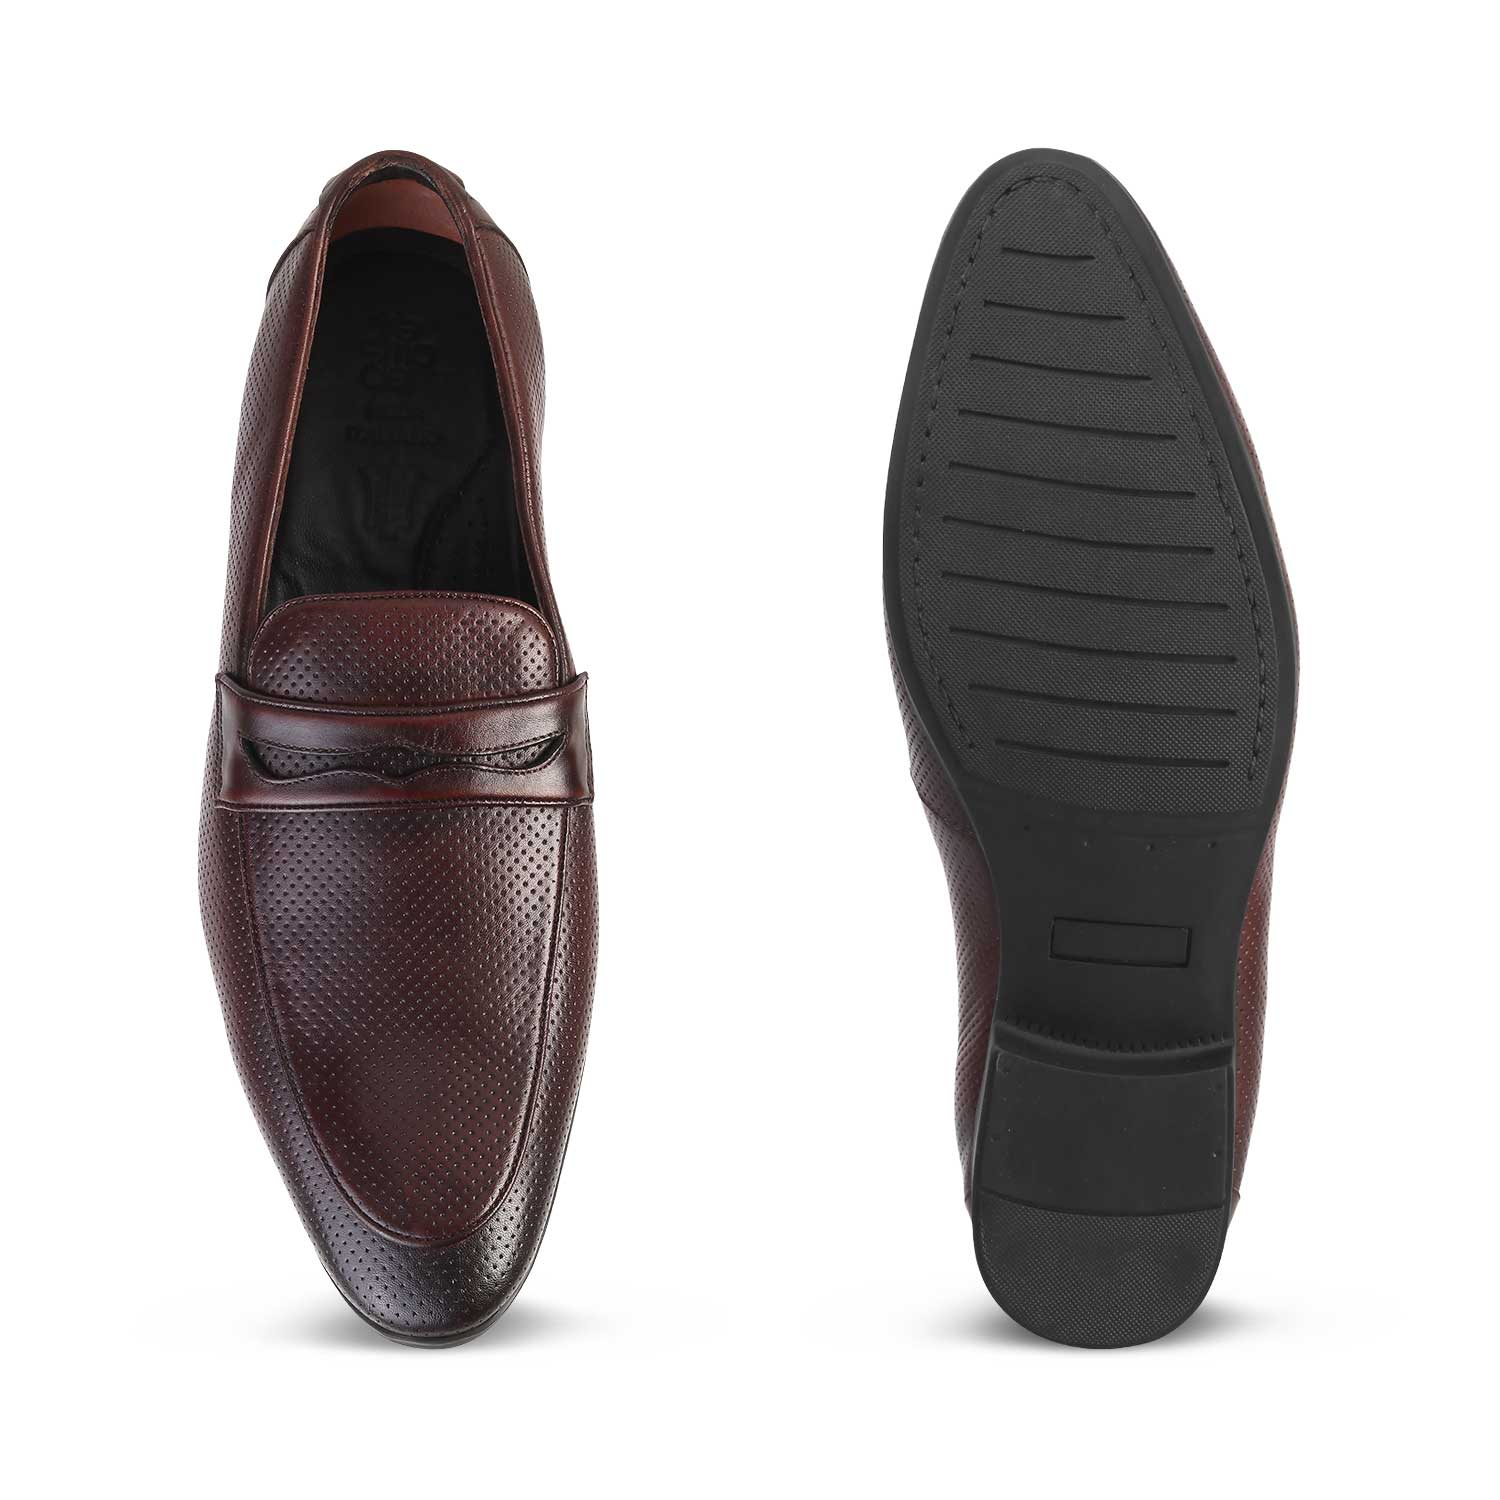 Brown Loafer Shoes For Men Online at Tresmode.com